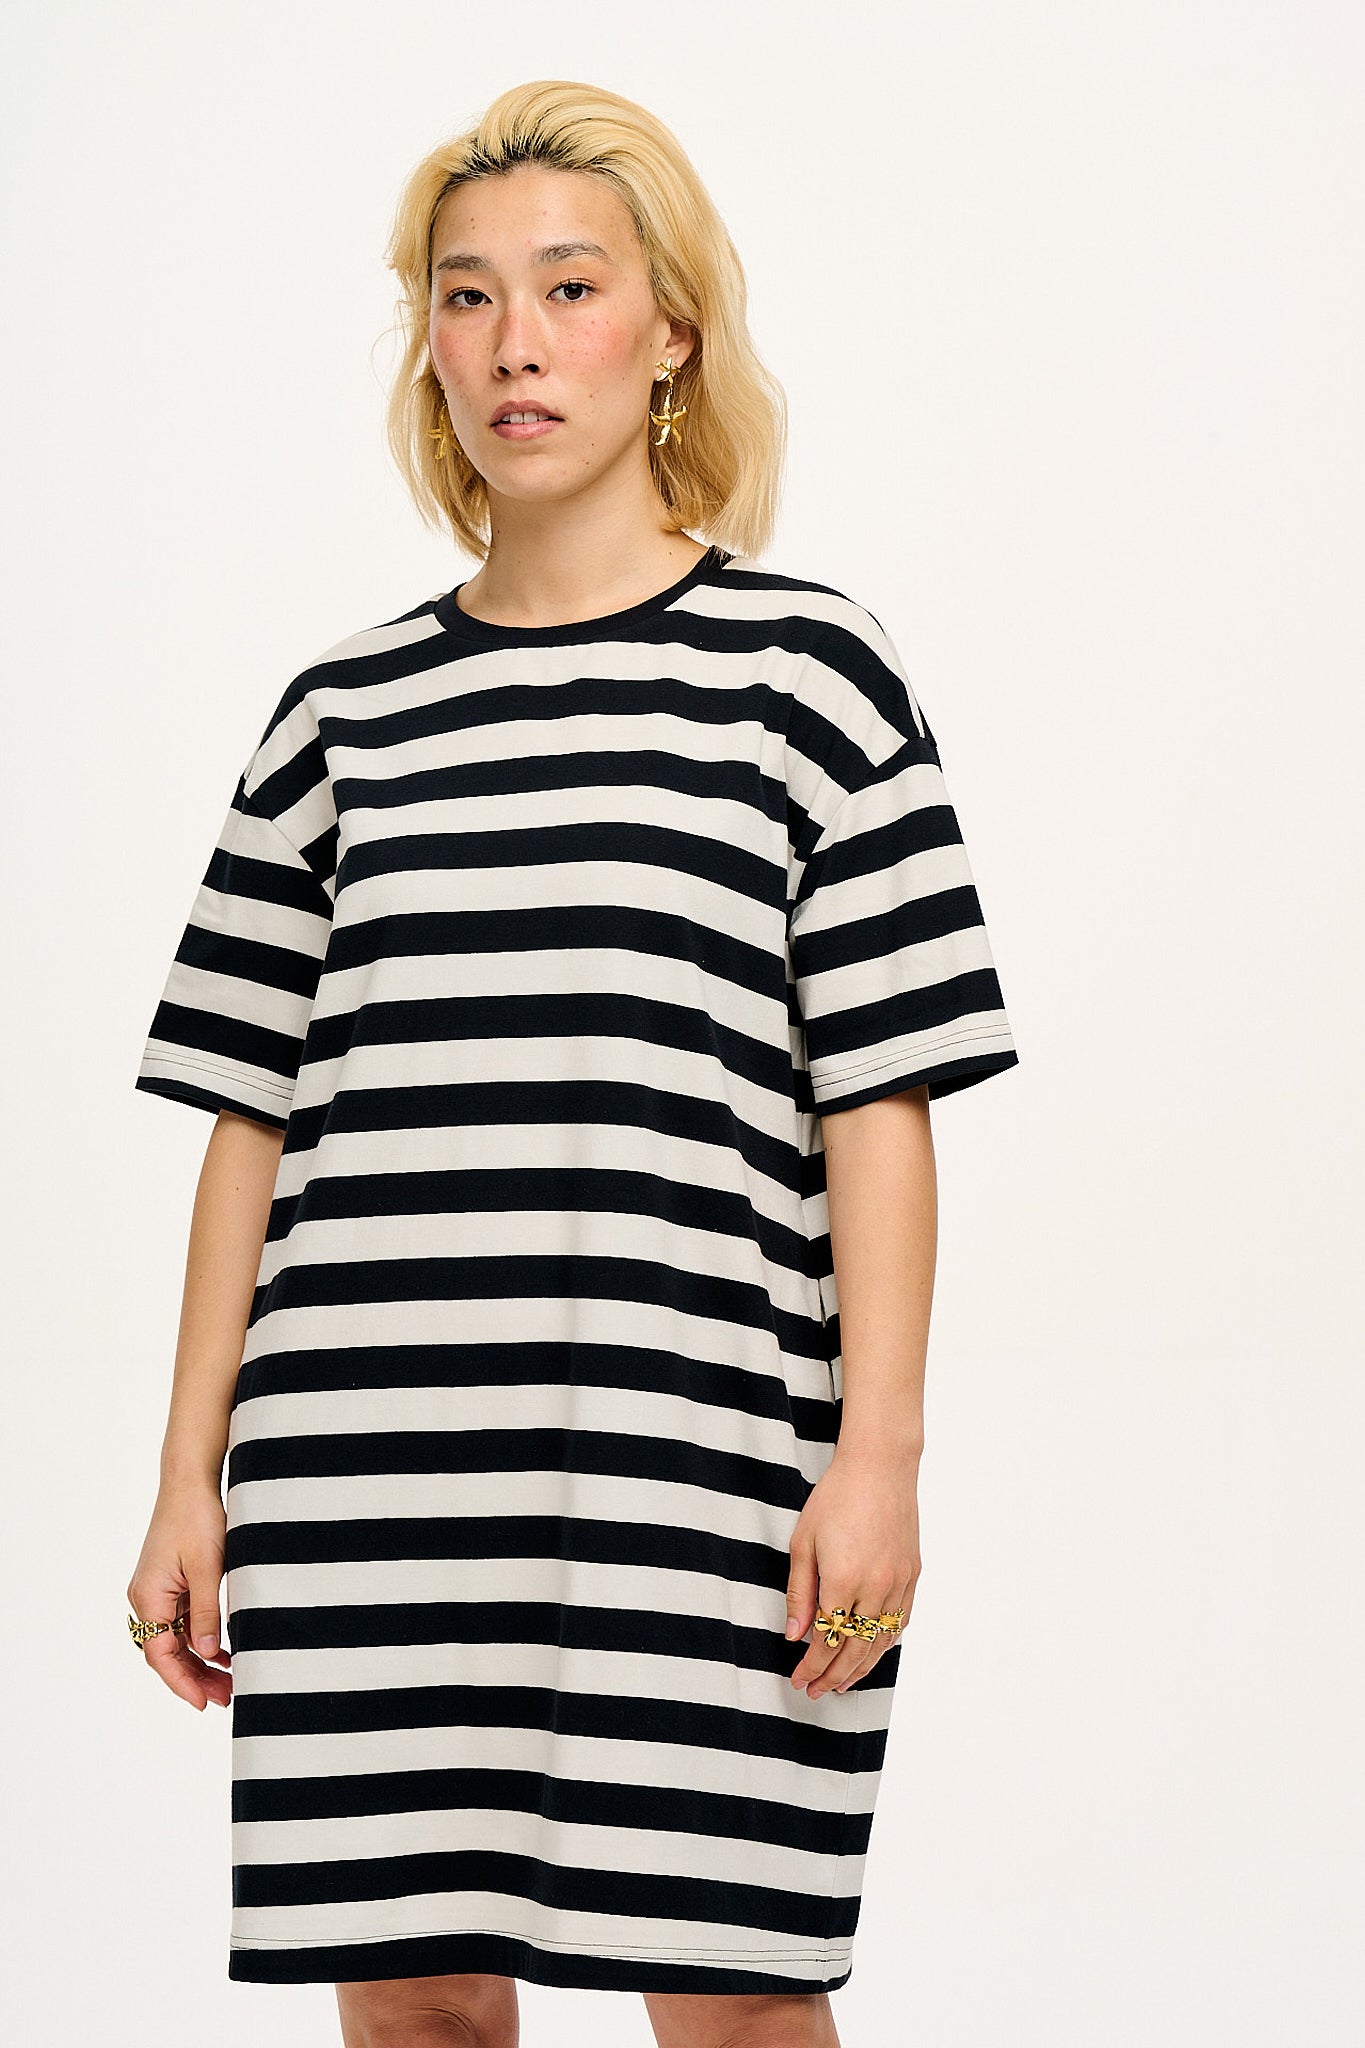 Lacey T-Shirt Dress: ORGANIC COTTON - Black & White Stripe